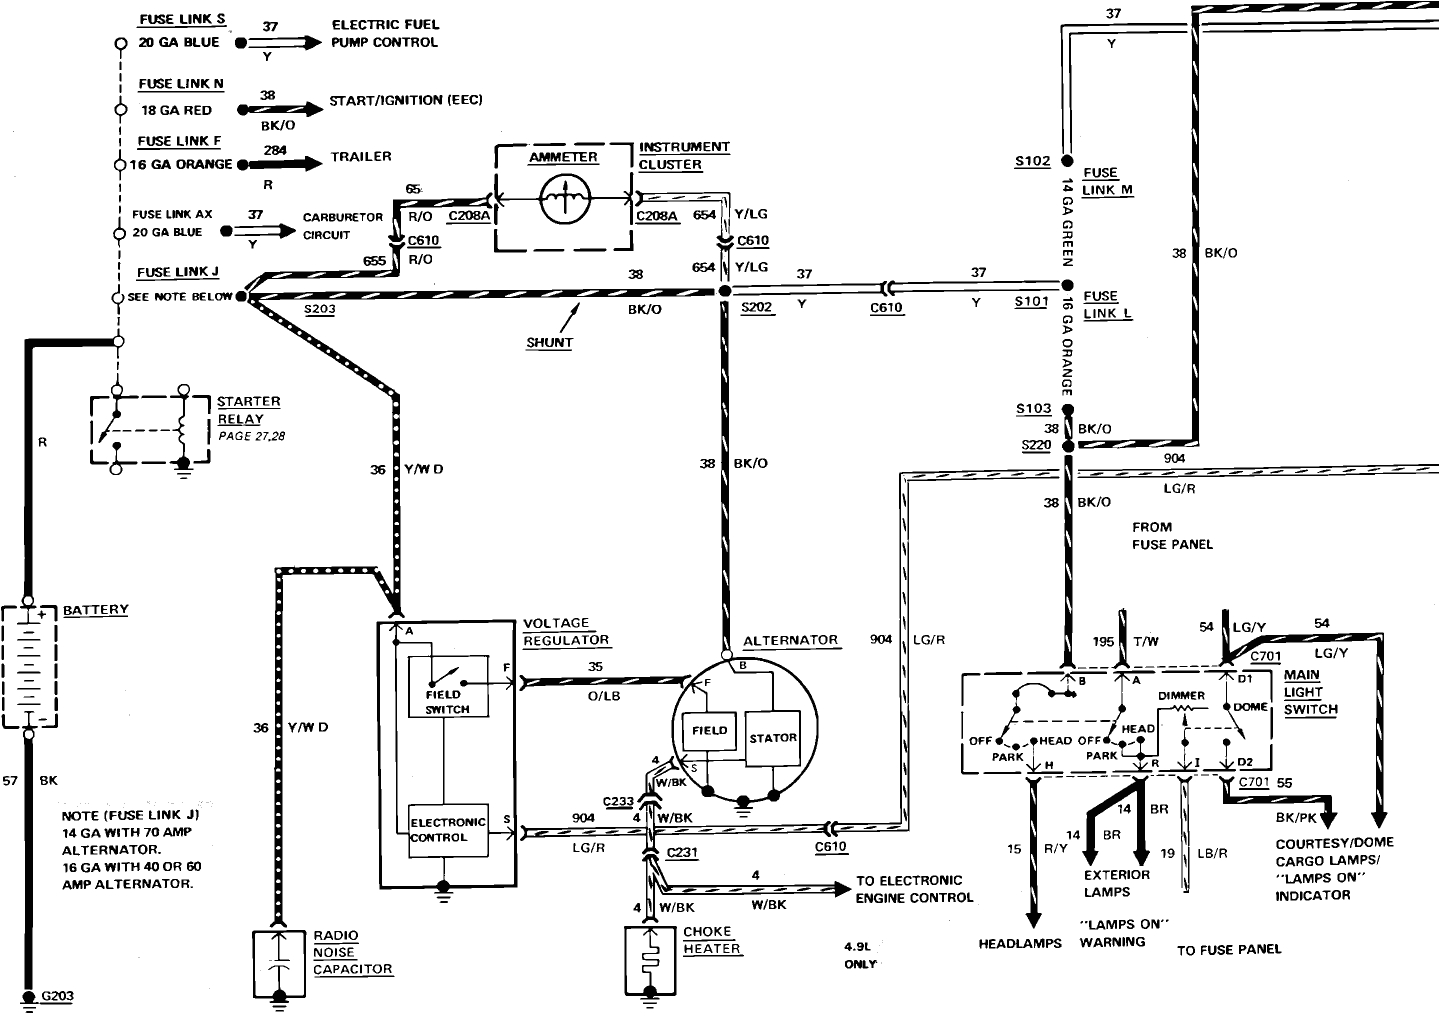 1986 ford f 250 wiring diagram blog wiring diagram wiring diagram for 1986 ford f250 with diesel wiring diagram for 1986 ford f250